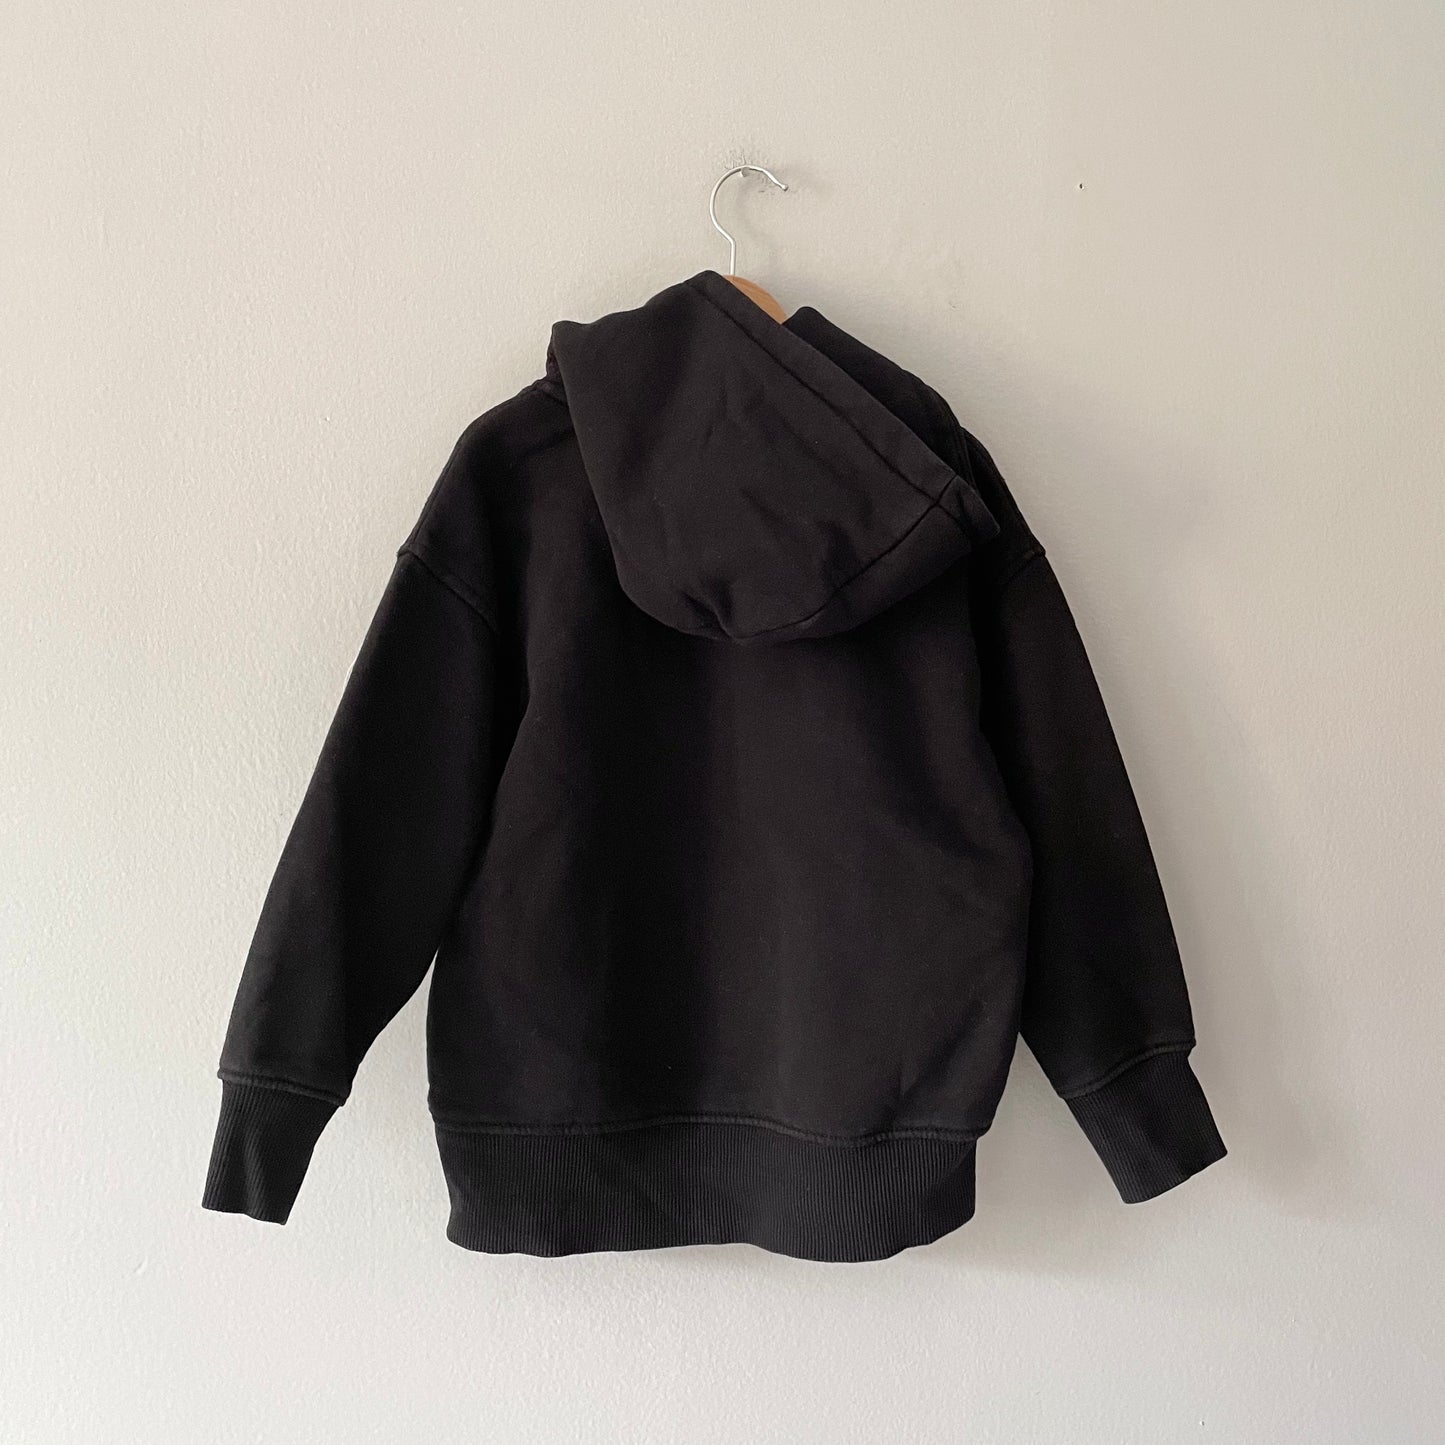 Zara / Black skateboard hoodie / 6Y